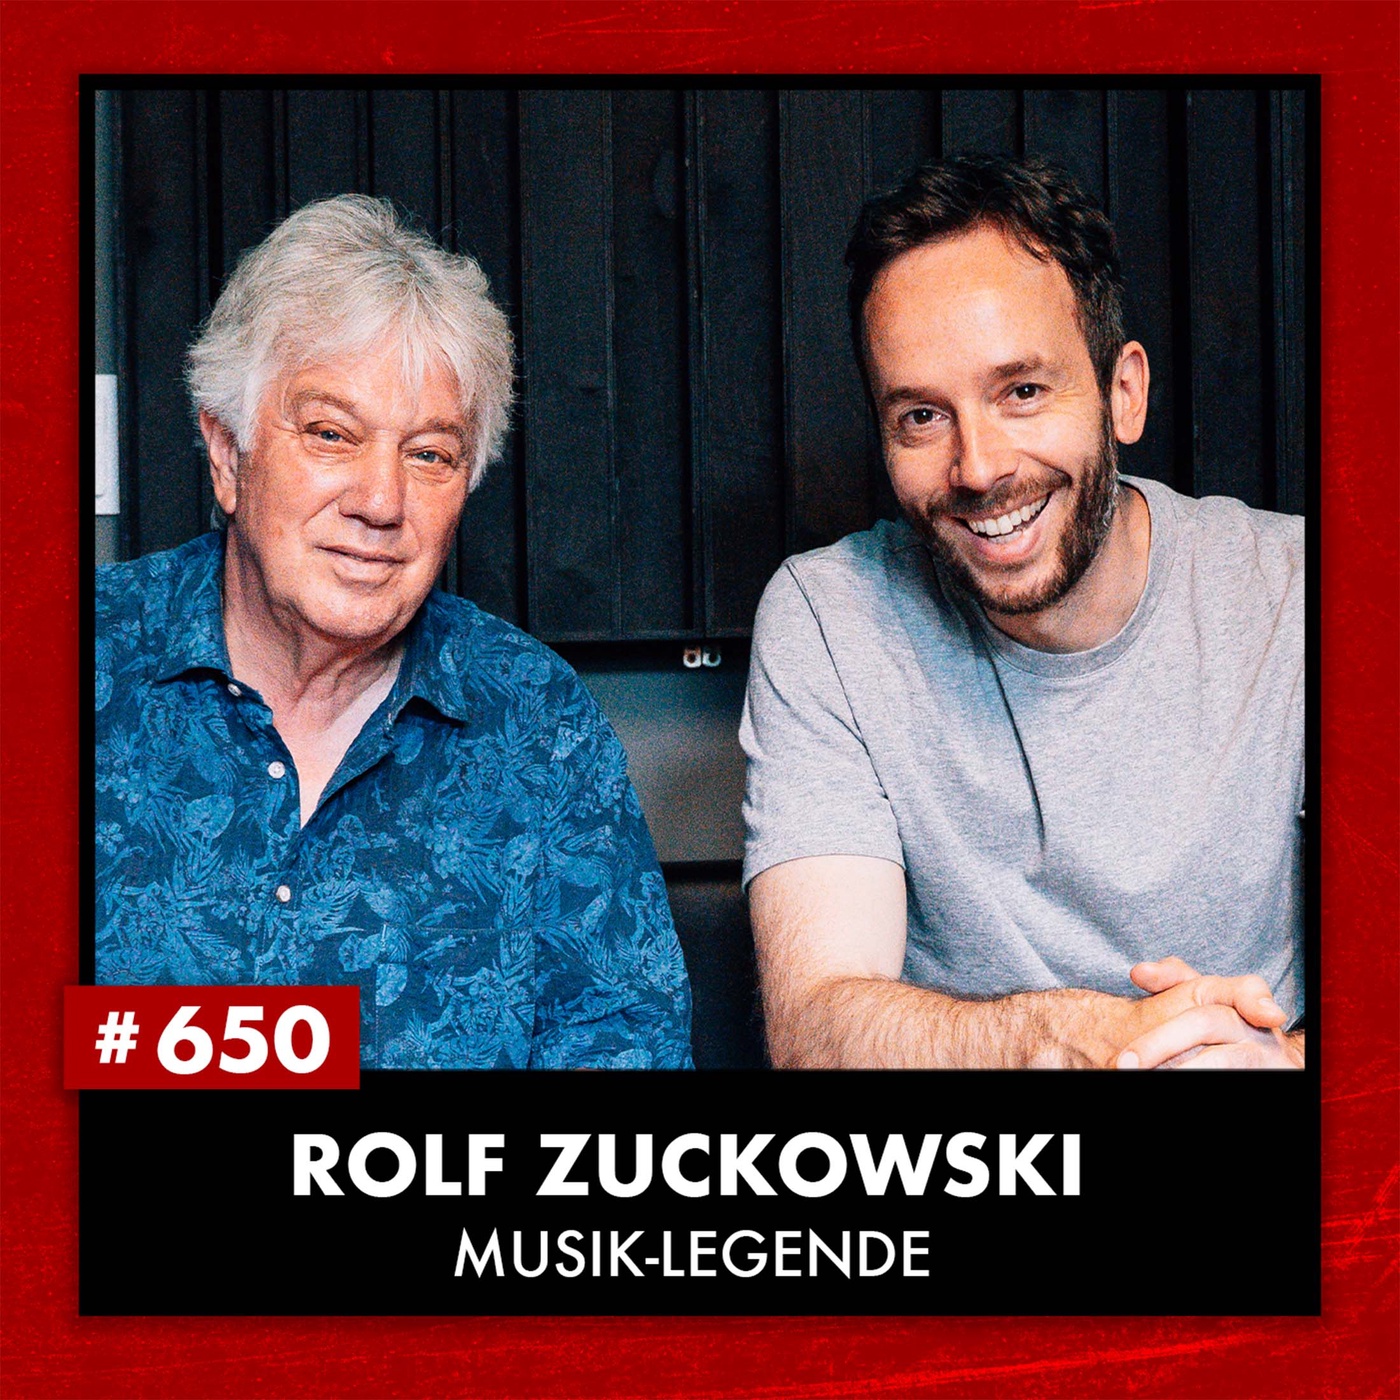 Musiker und Komponist Rolf Zuckowski (#650)